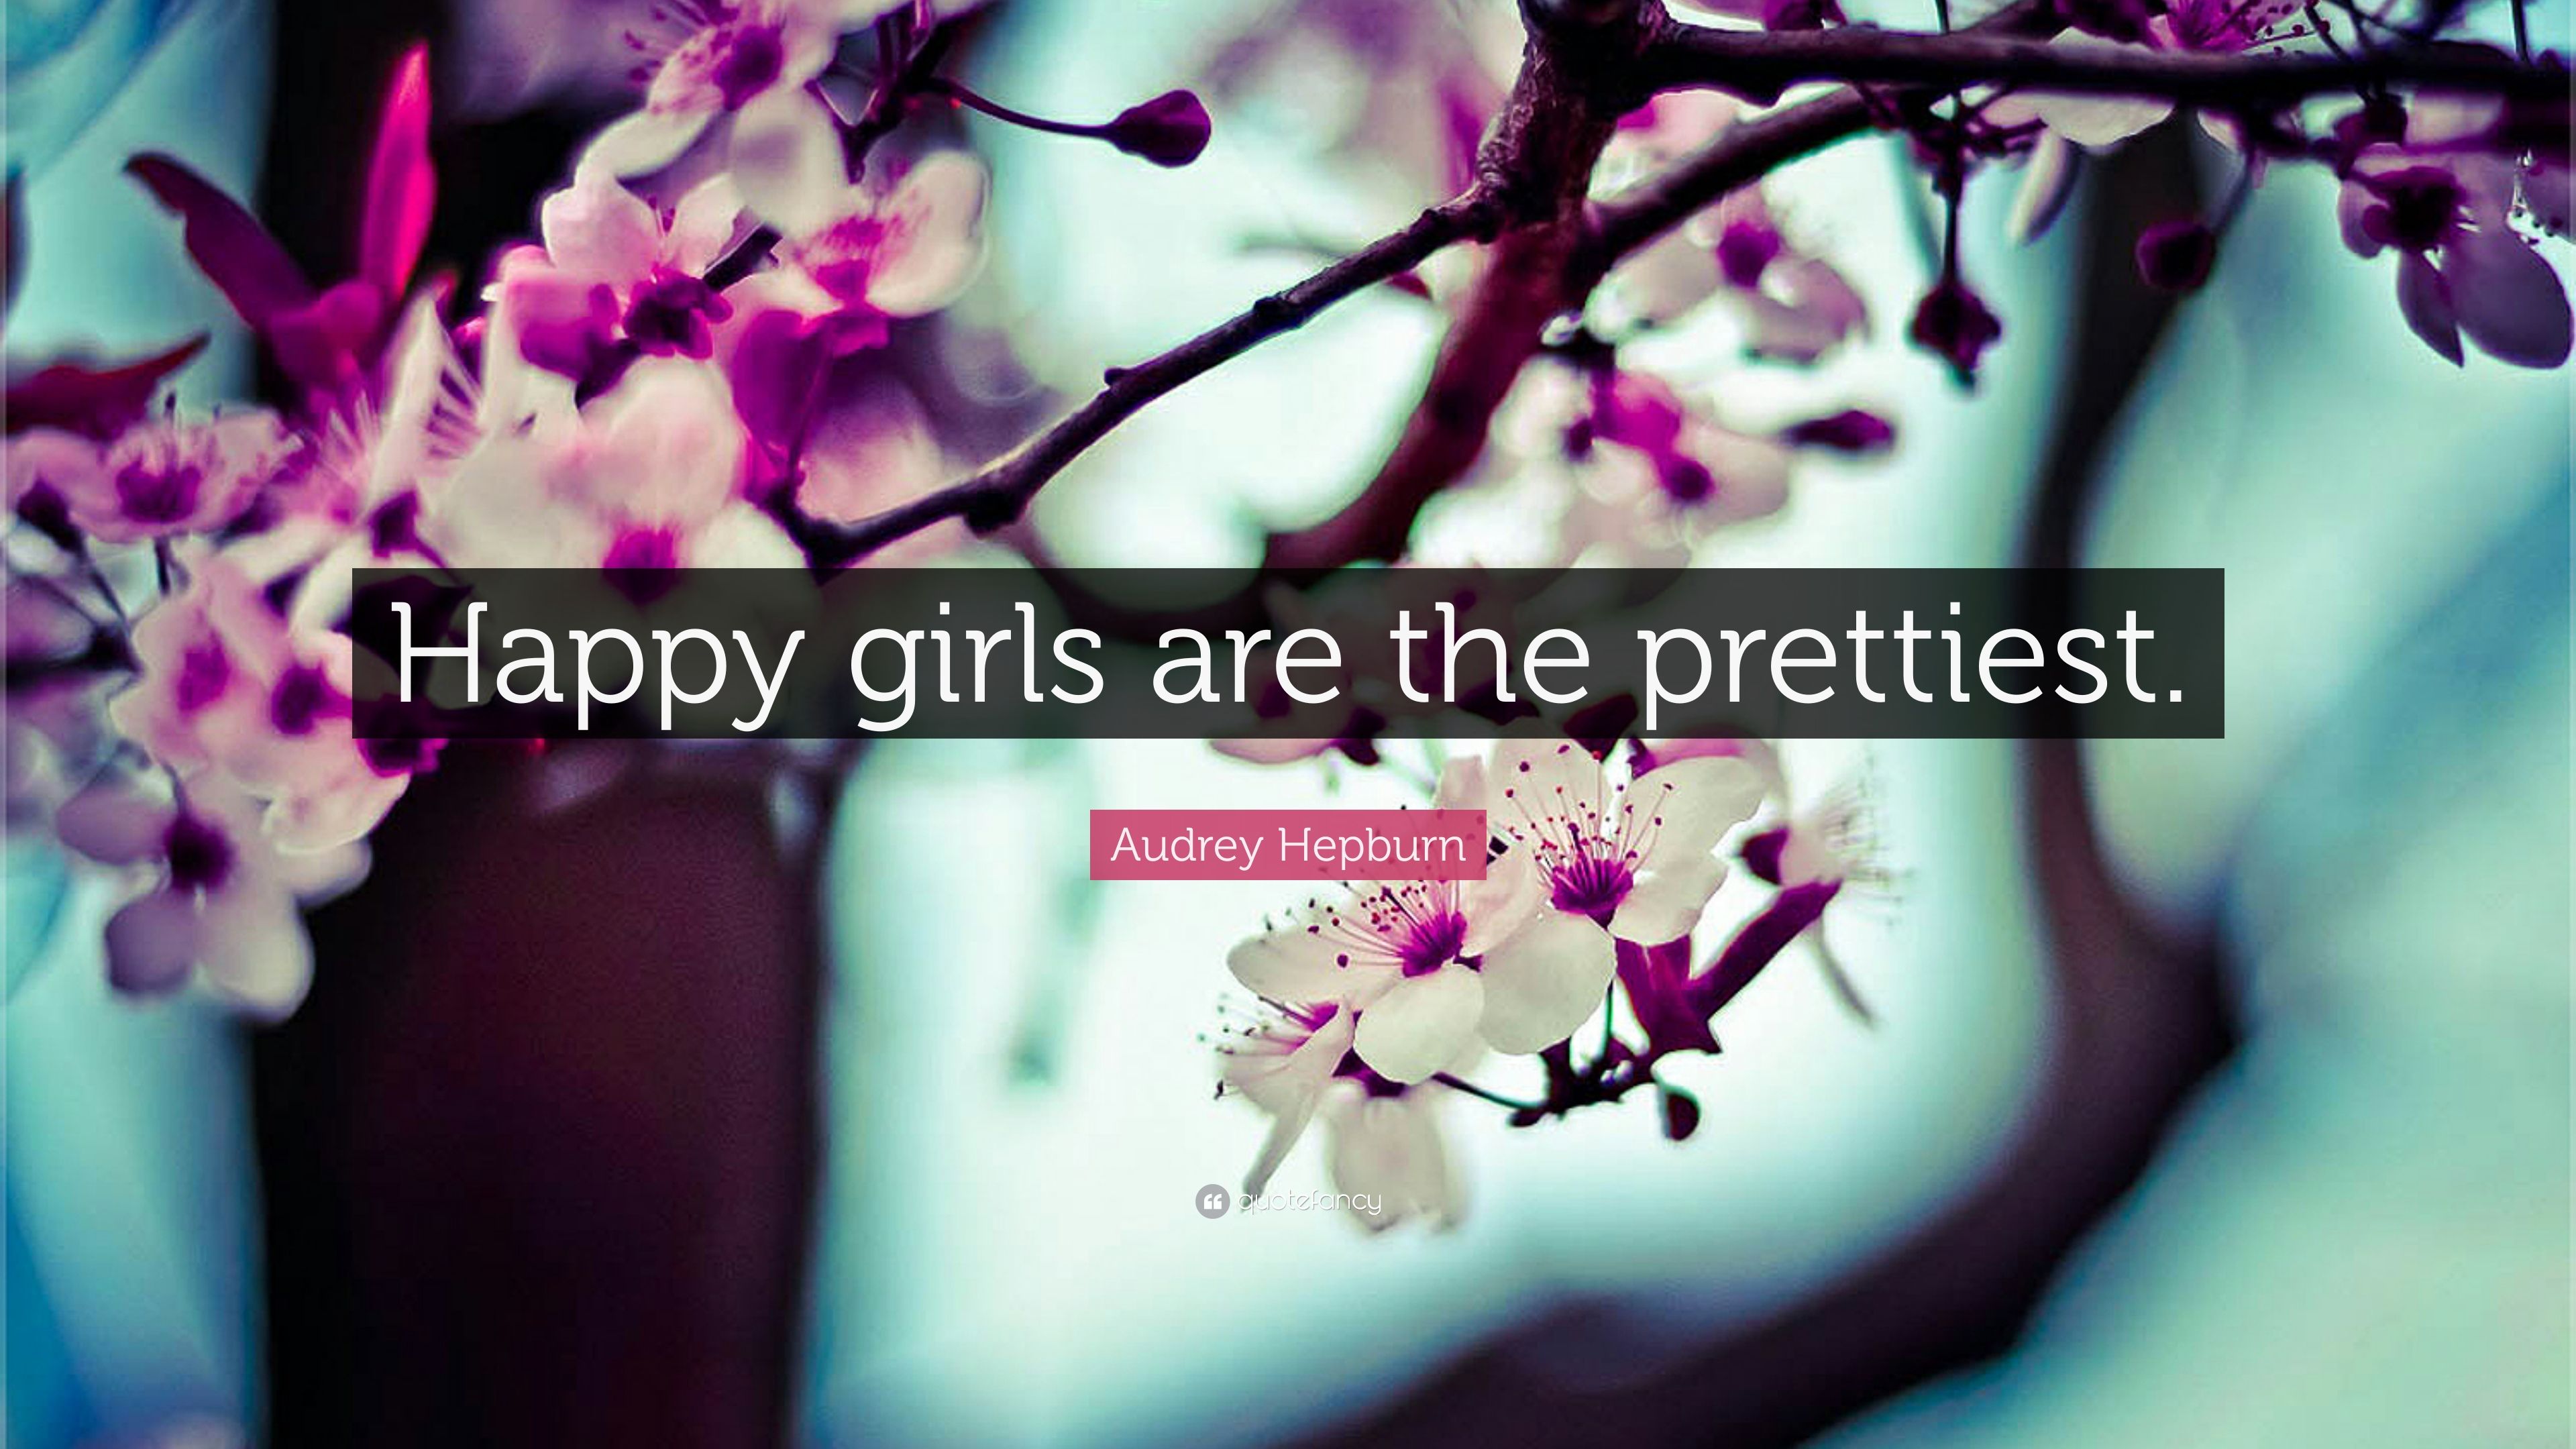 Audrey Hepburn Quote: “Happy girls are the prettiest.” (22 wallpaper)